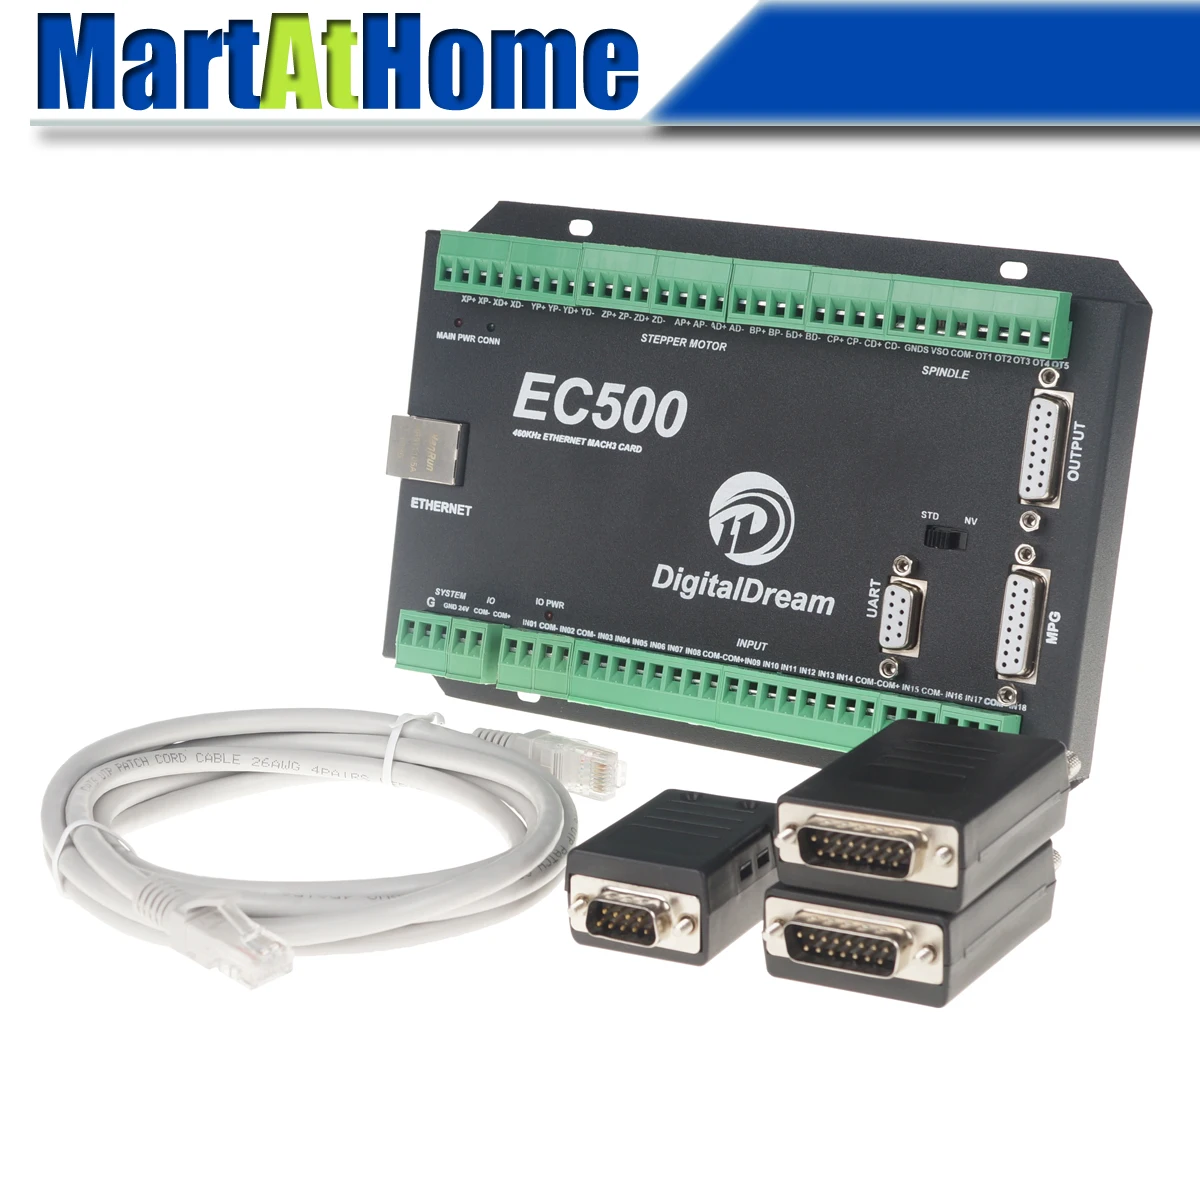 Ethernet-3/4/5/6 оси Mach3 CNC движения Управление карты коммутационная плата 460 кГц/24 V DC Поддержка Стандартный MPG& Степпер/сервопривод